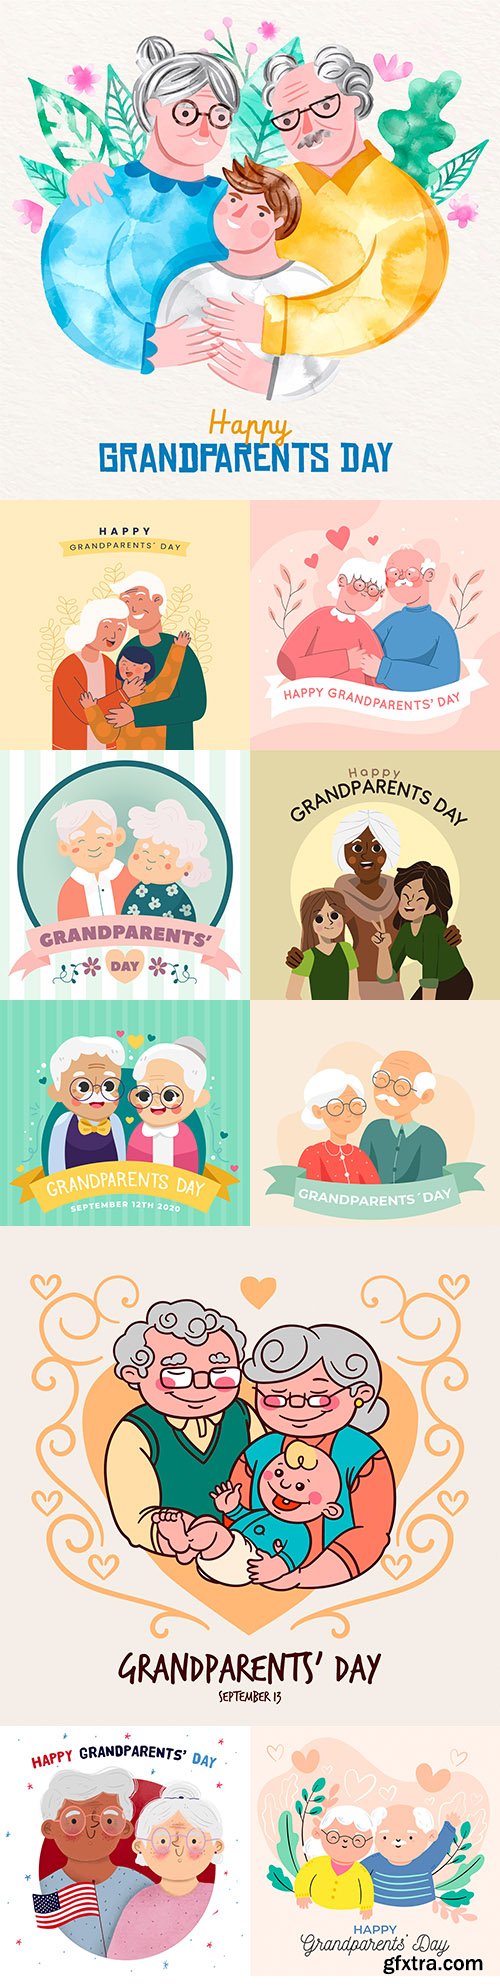 National grandparents day flat design illustration